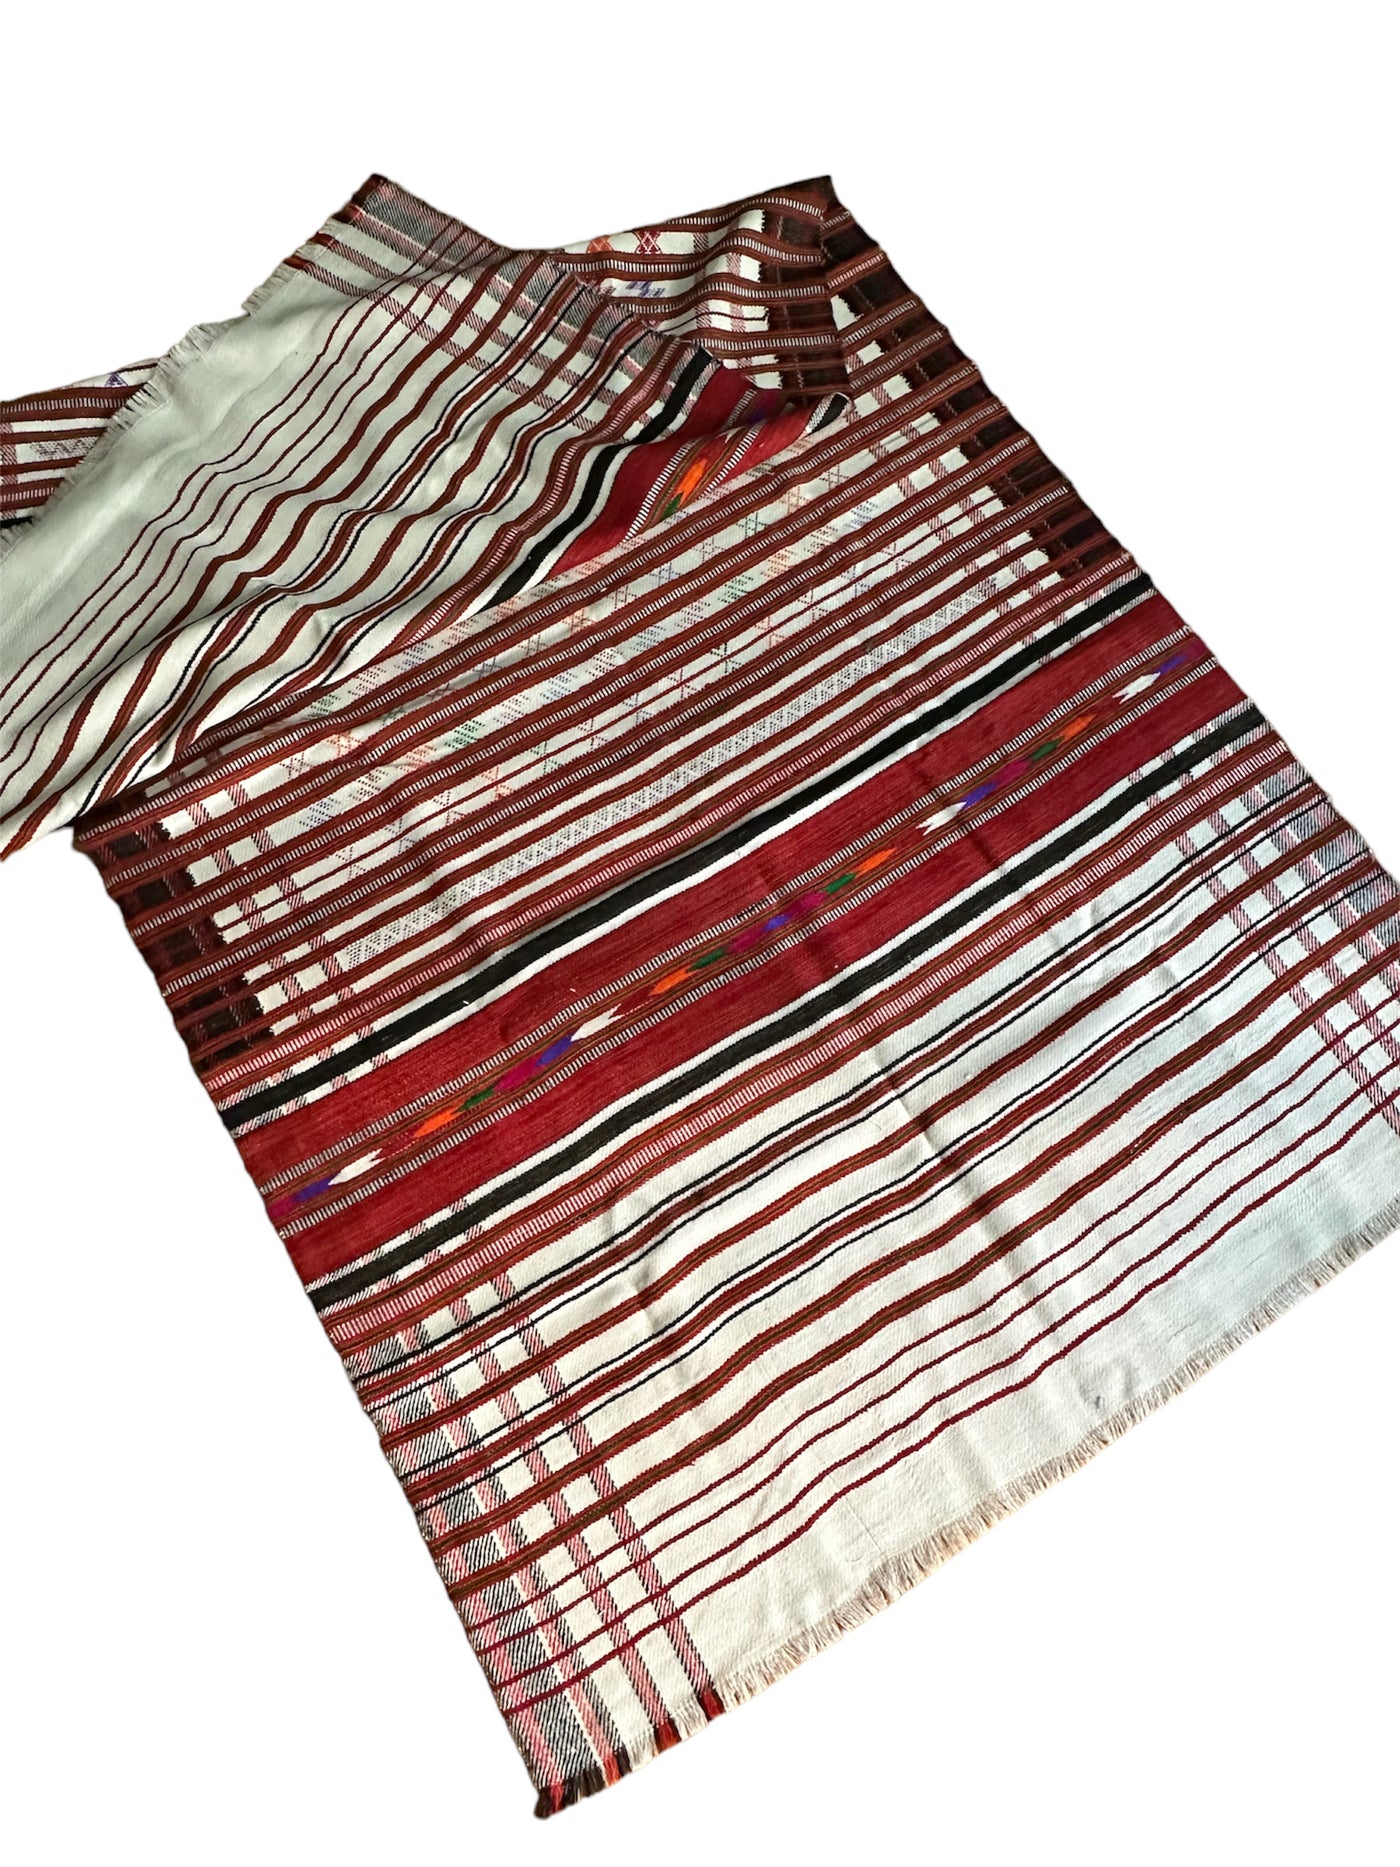 Jaiha shawl